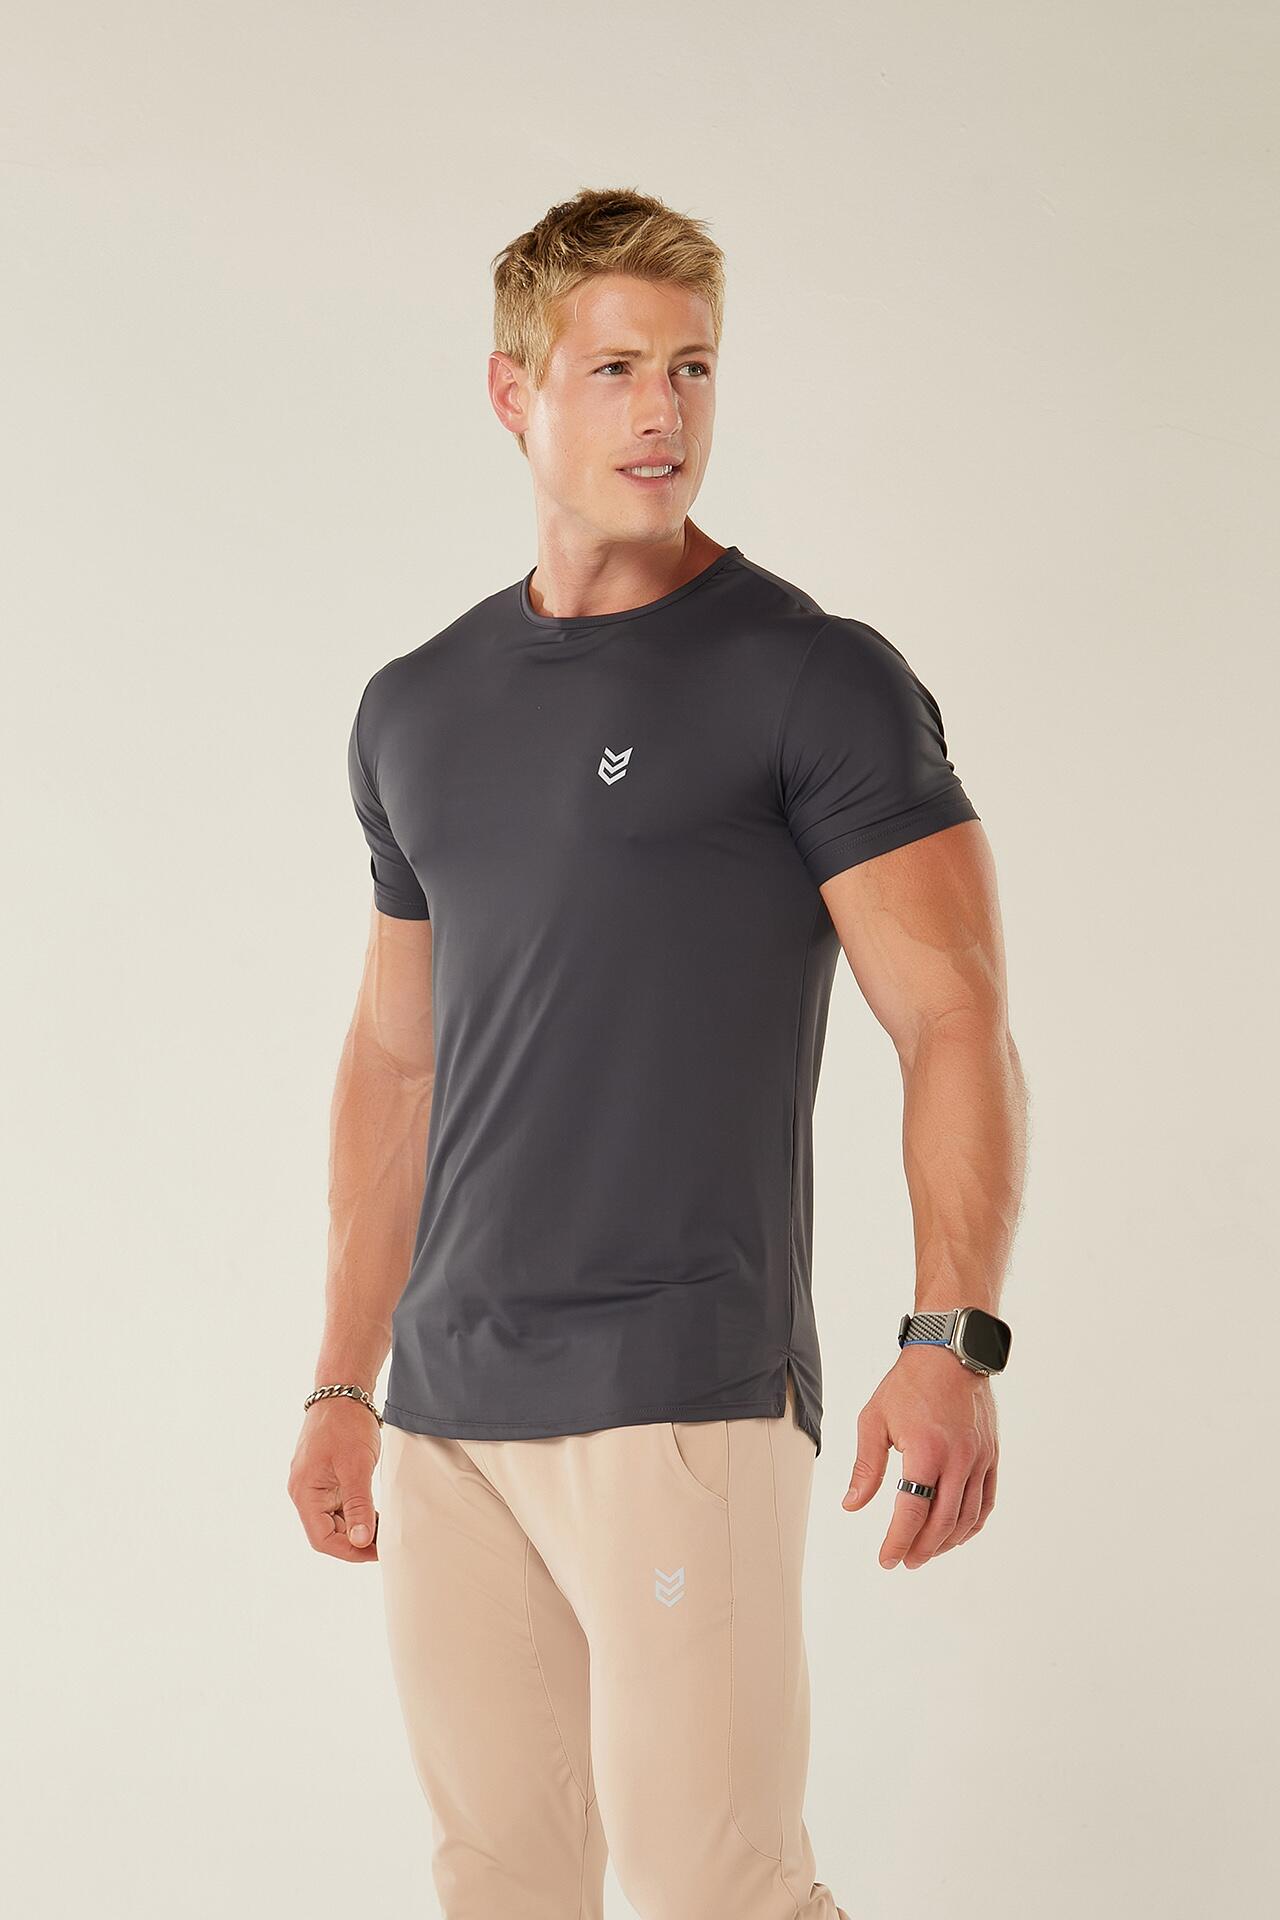 Camiseta Corrida Run Dry Tech UV-50+ - Feminina Camisetas e Regatas